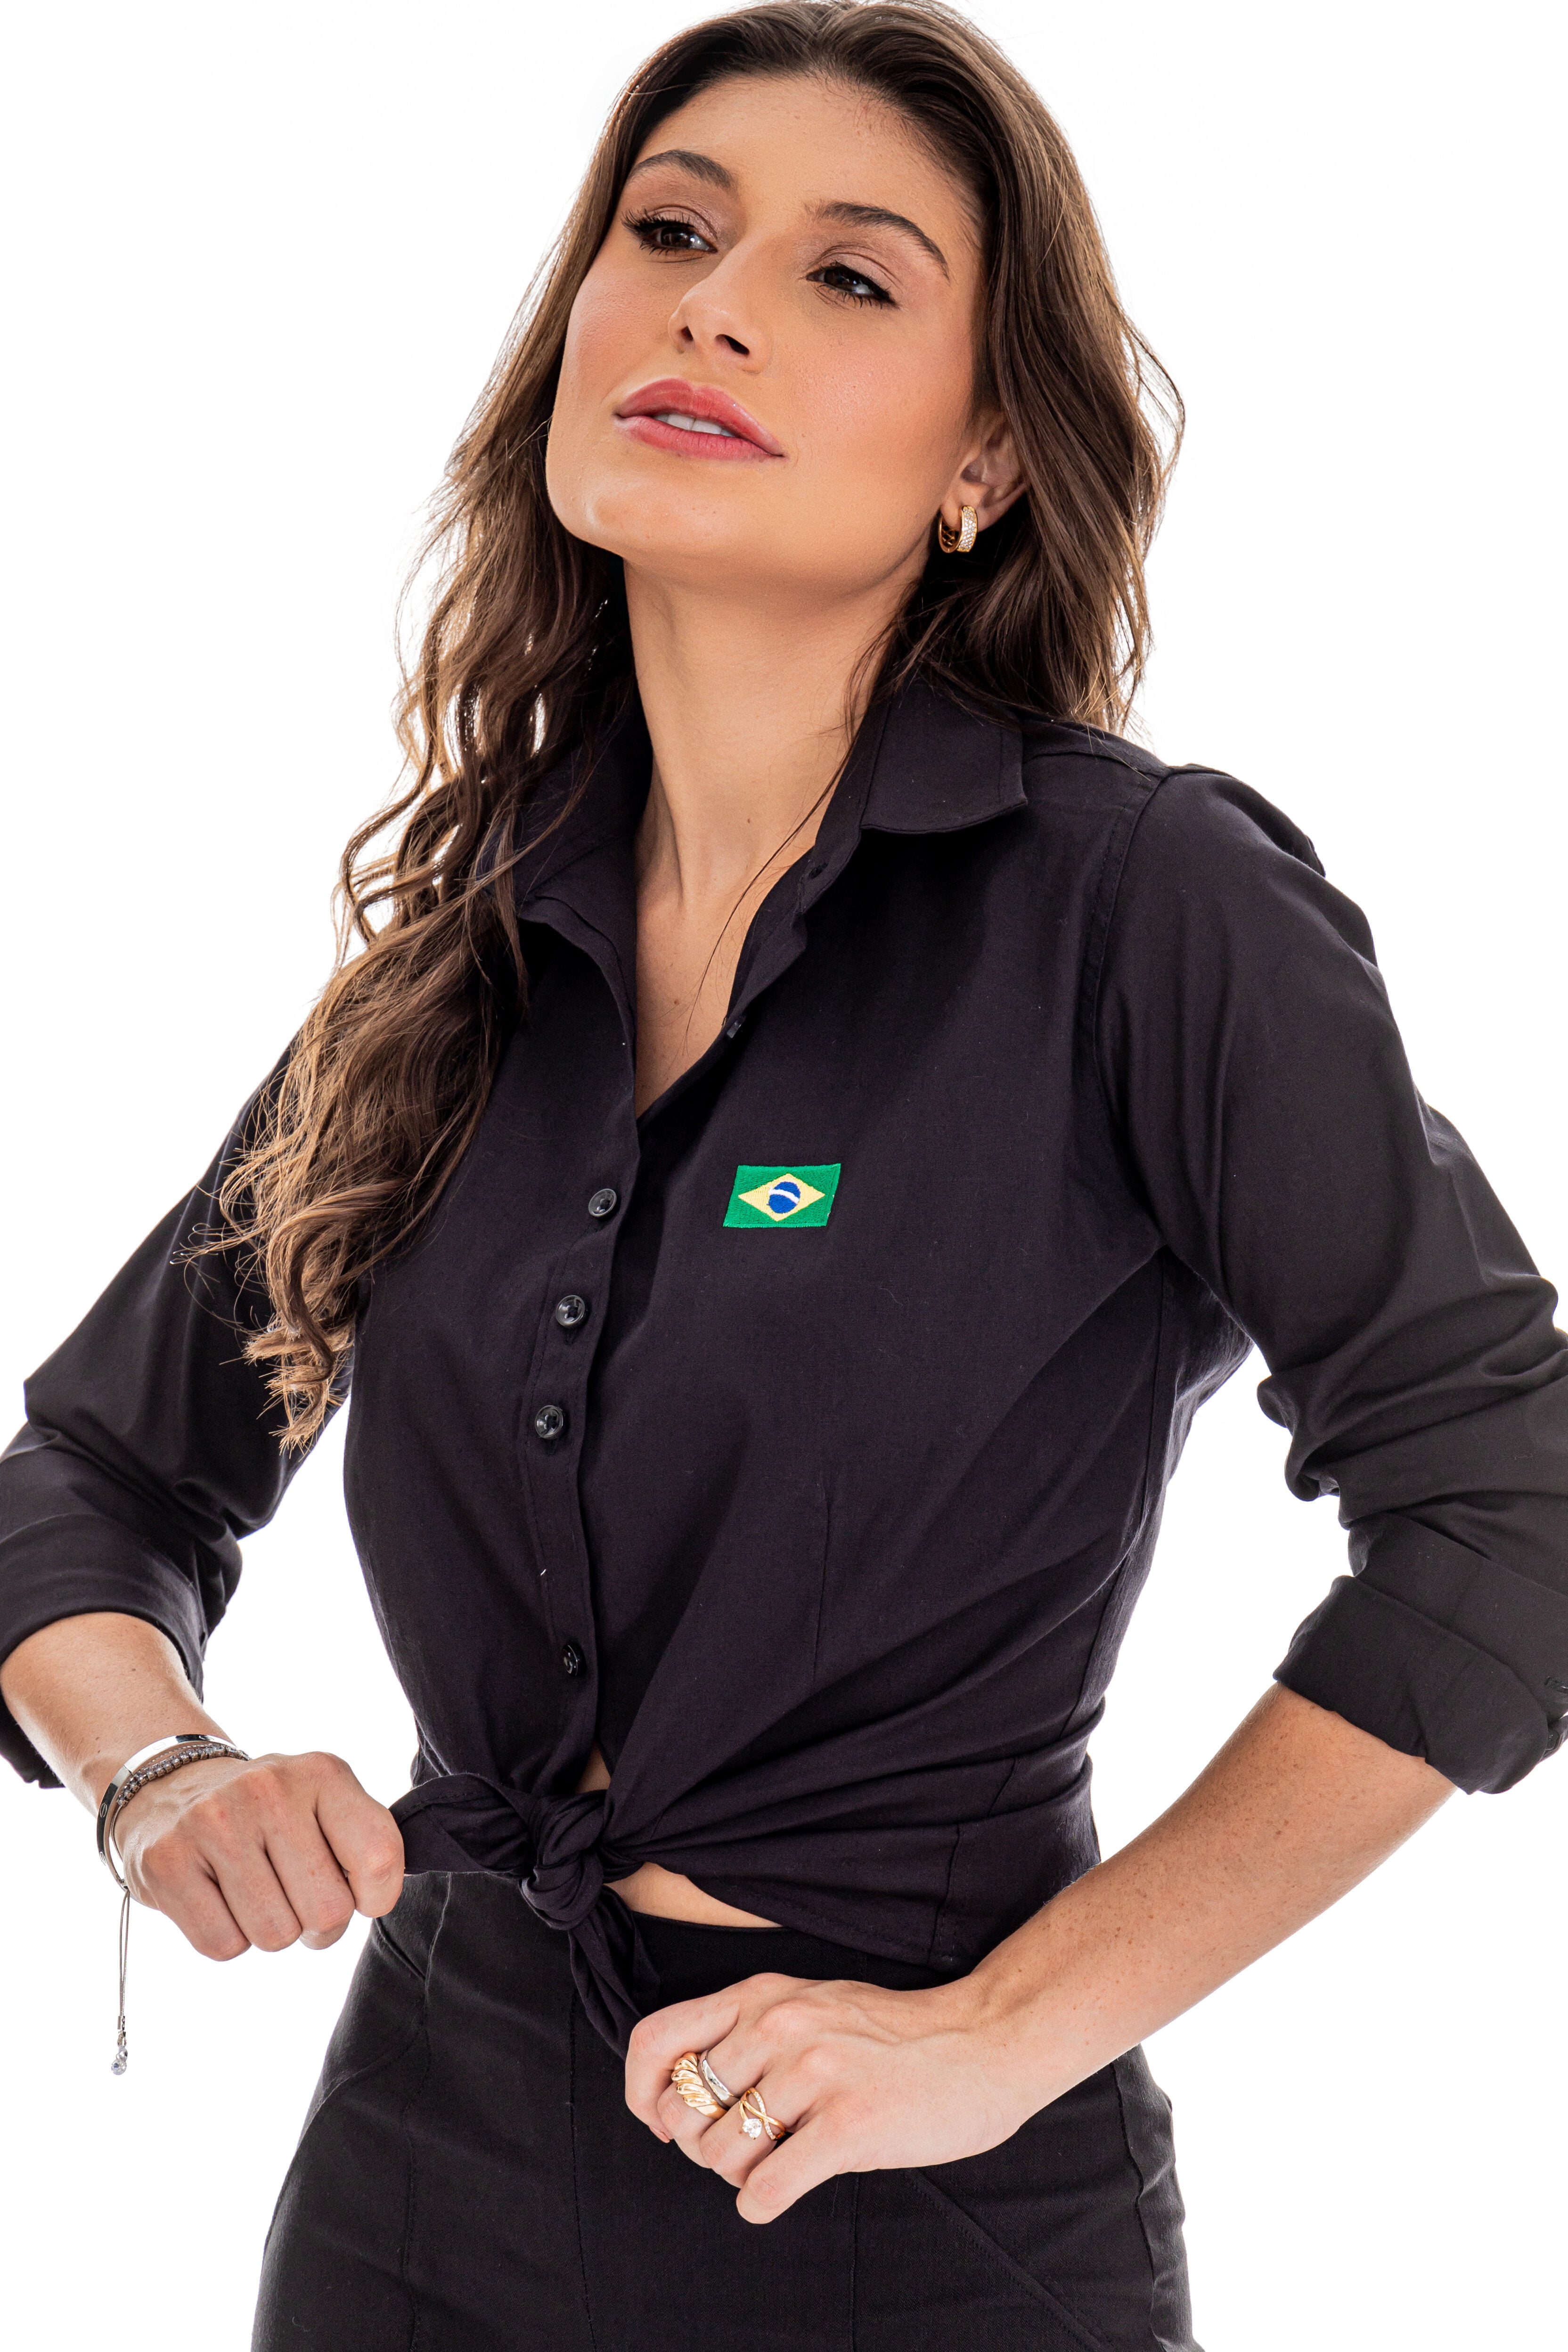 https://58532.cdn.simplo7.net/static/58532/sku/feminino-camisa-feminina-social-manga-longa-brasil-preta--p-1665539087344.jpg